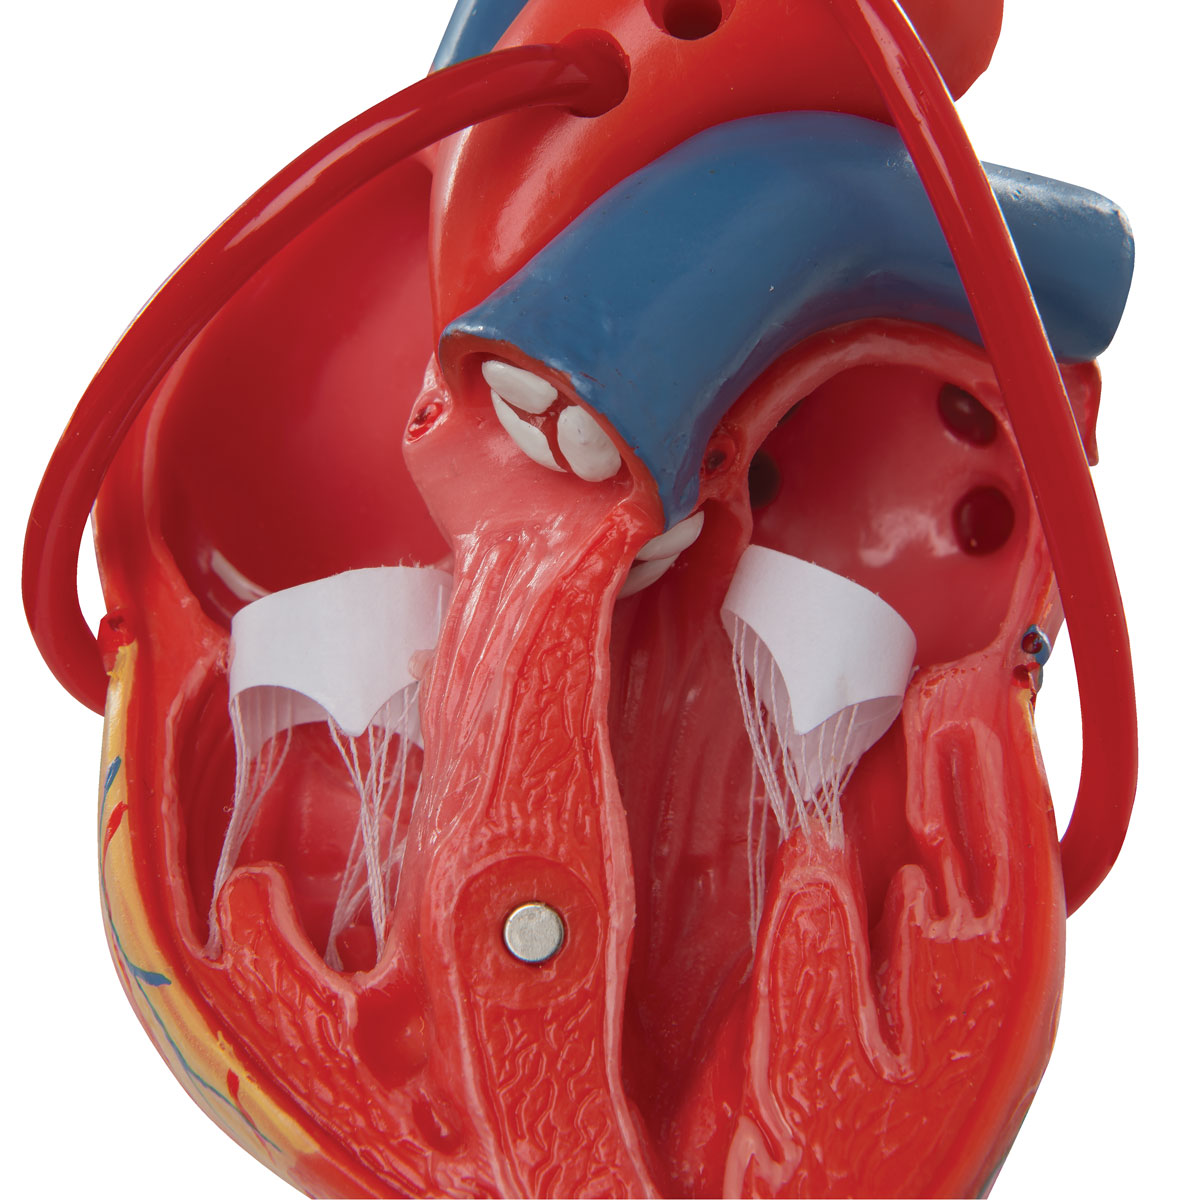 Hjertemodel der viser resultatet efter en bypass-operation